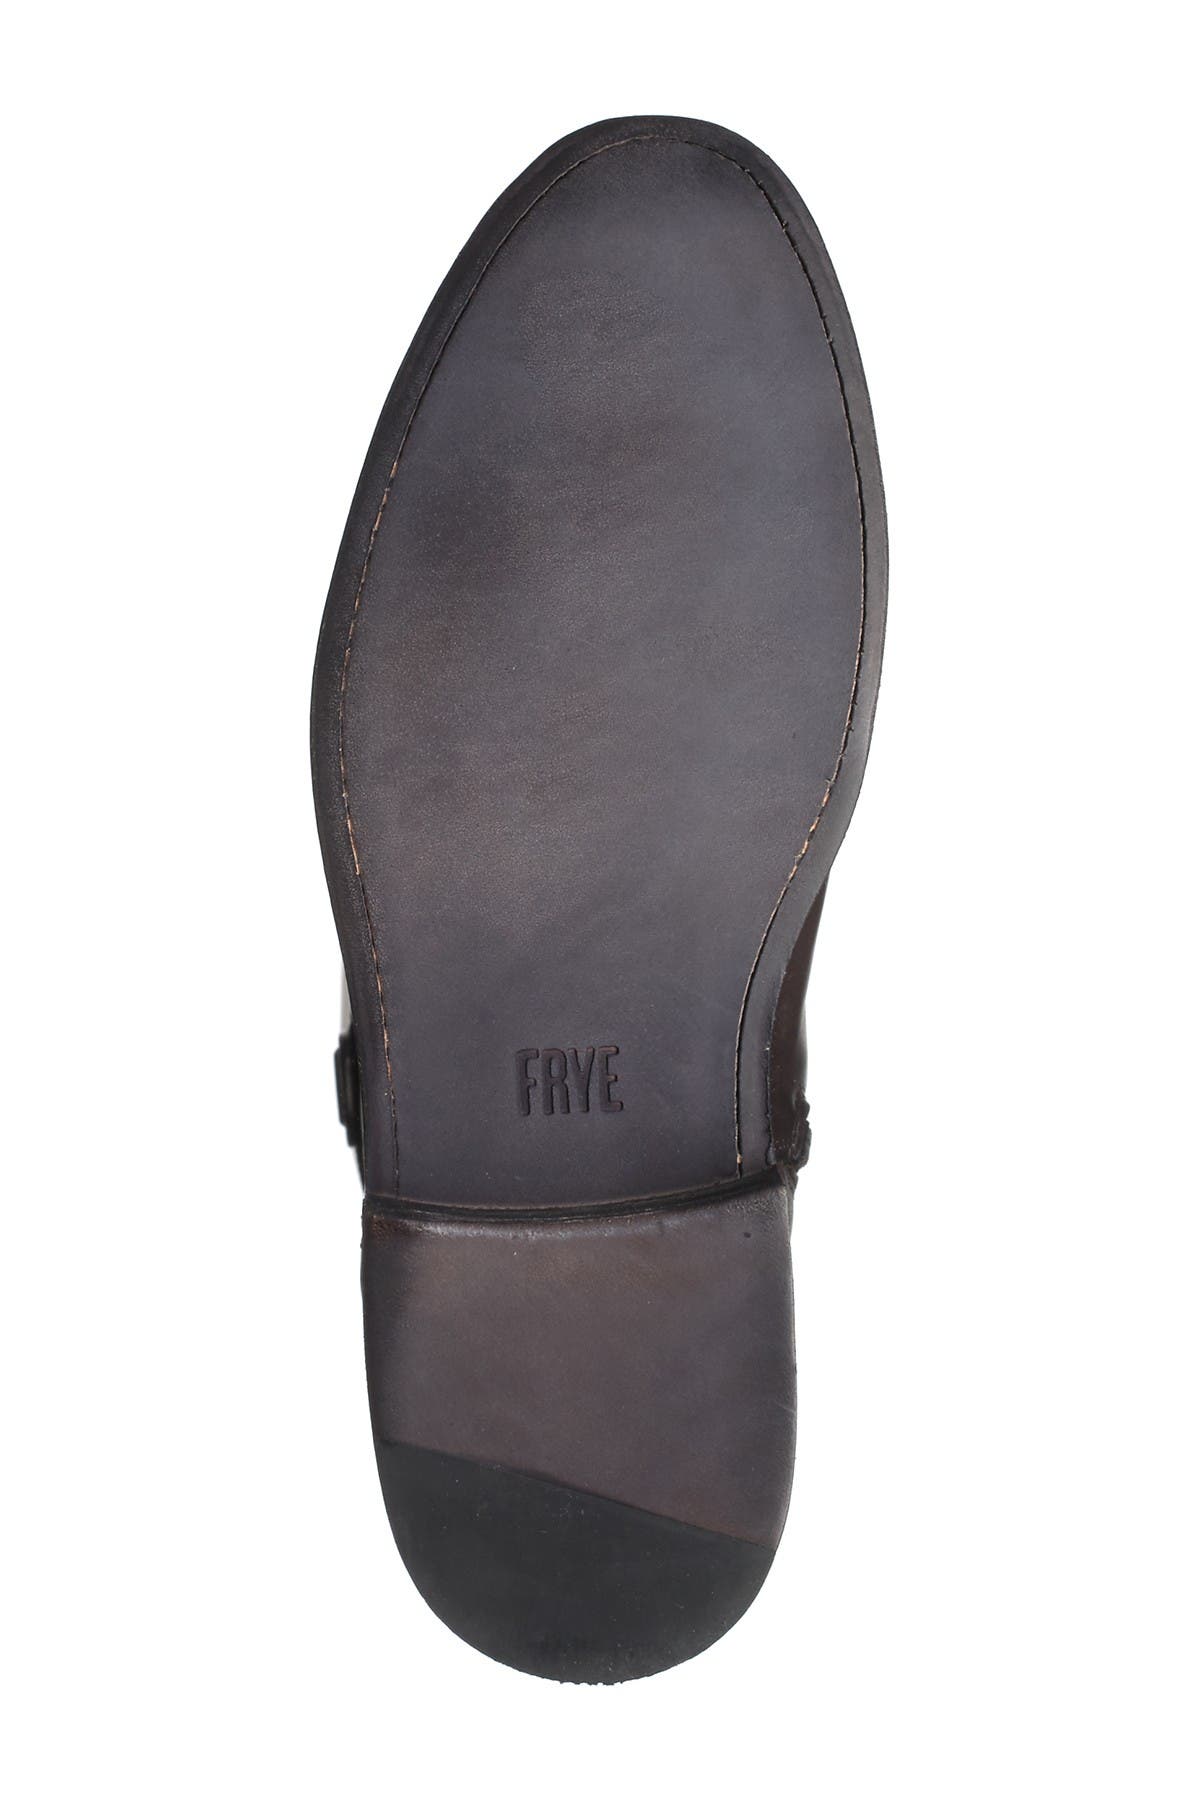 Frye | Jayden D Ring Boot - Wide Calf 